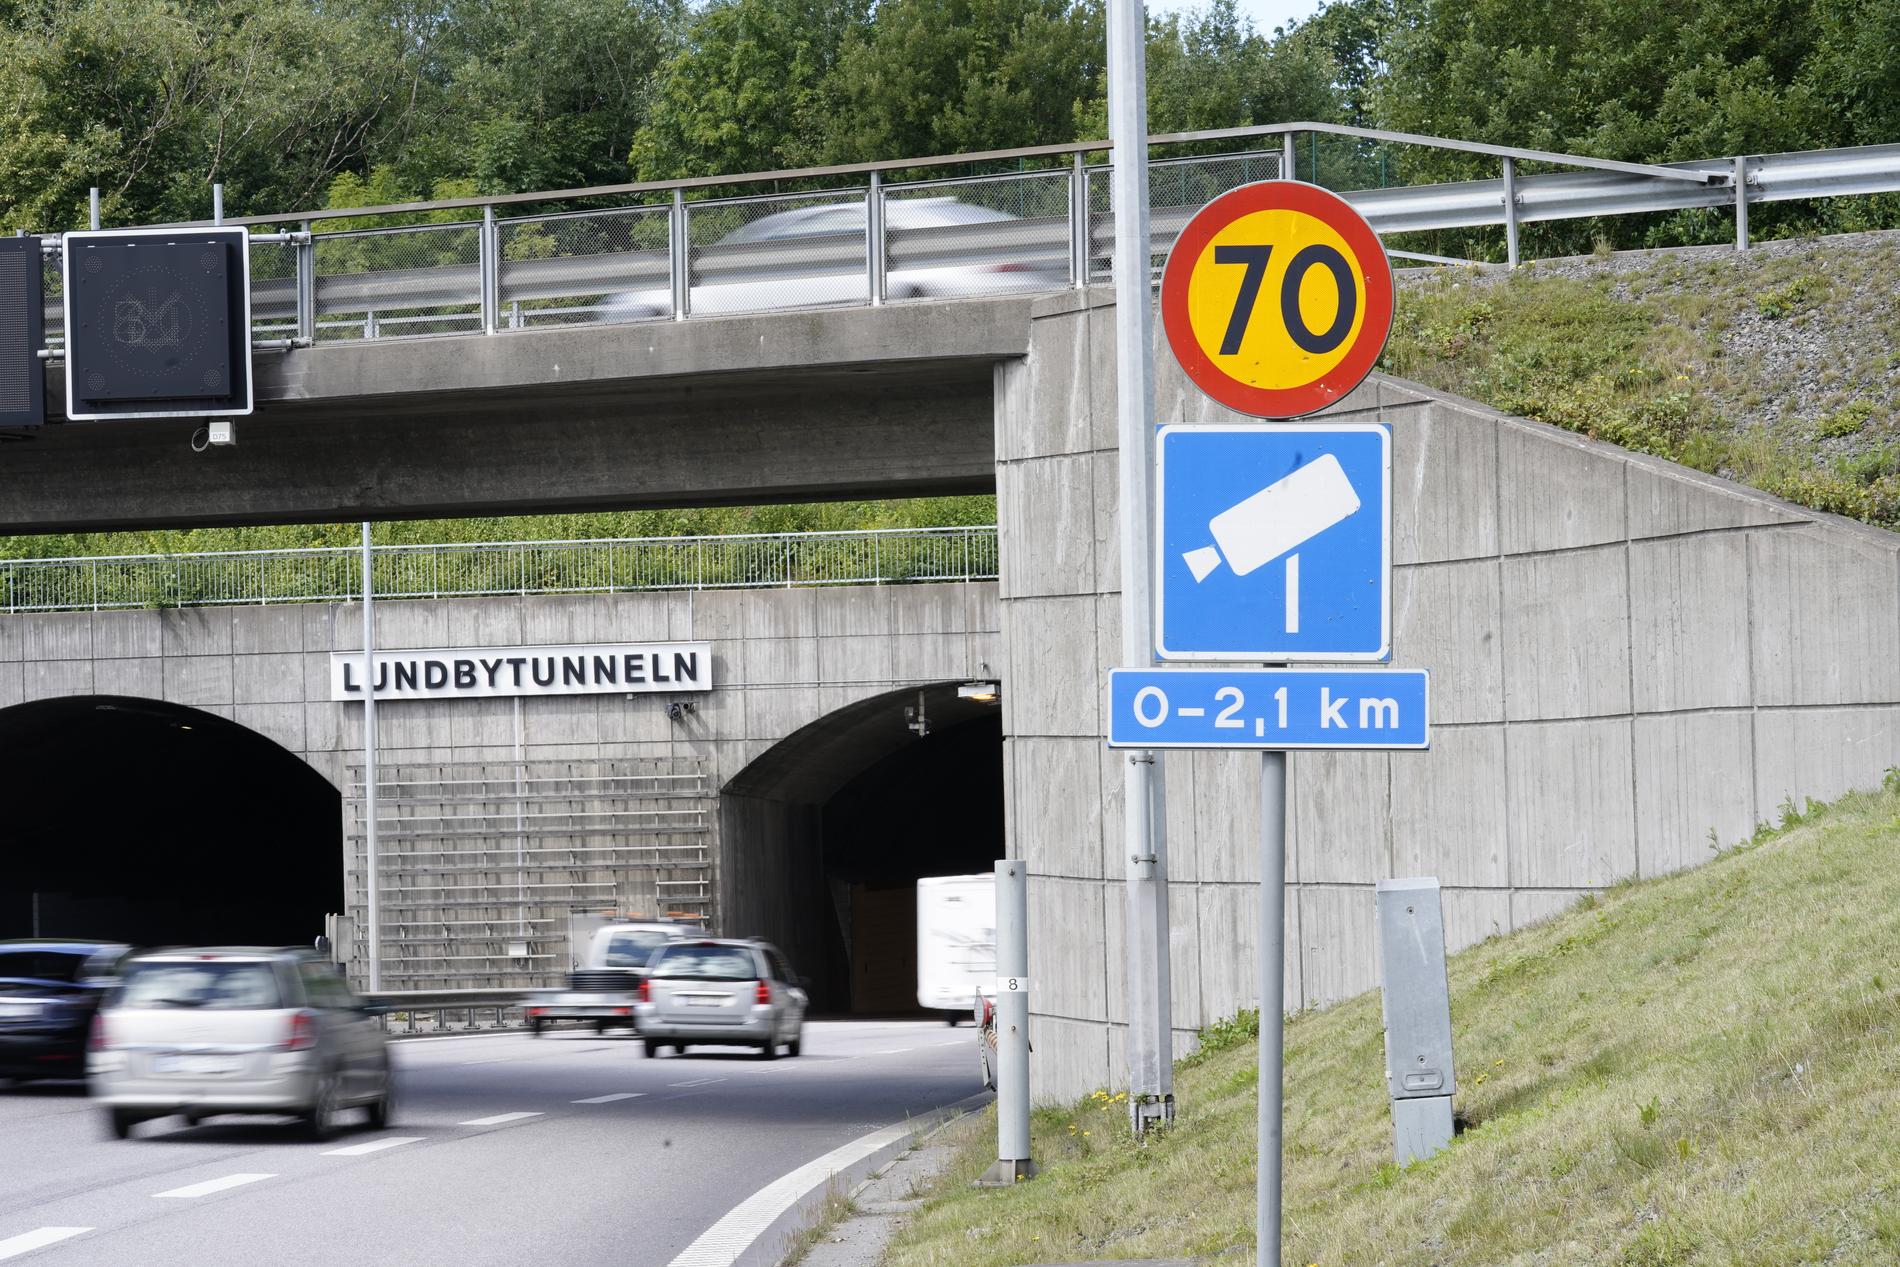 Lundbytunneln med fartkamera, Eriksbergsmotet. 4 239 fortkörare har fastnat på bild mellan Eriksbergs- och Bräckemotet på vägsträckan i Göteborg, flest i Sverige. Arkivbild